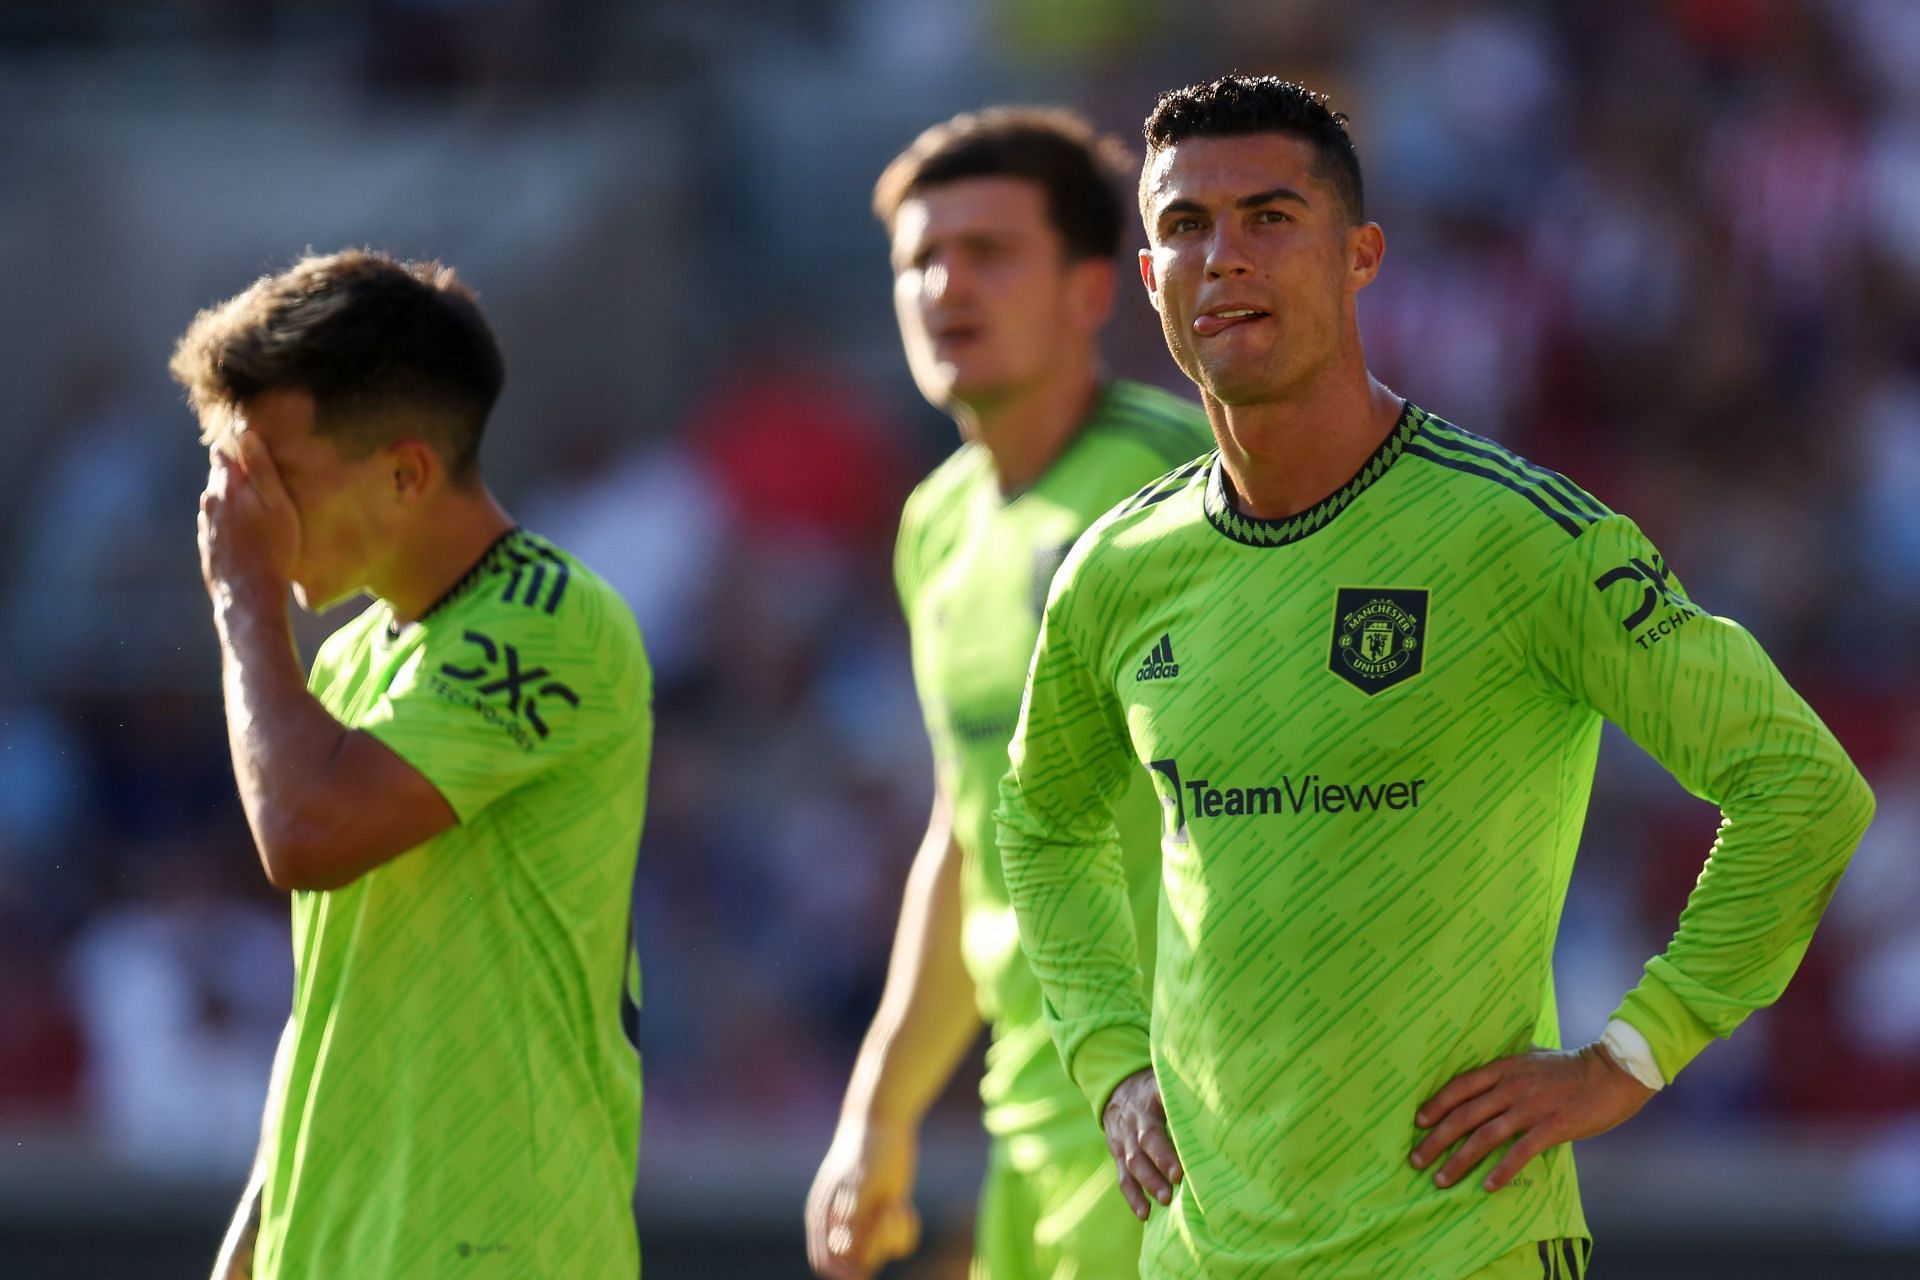 Cristiano Ronaldo cut a frustrated figure